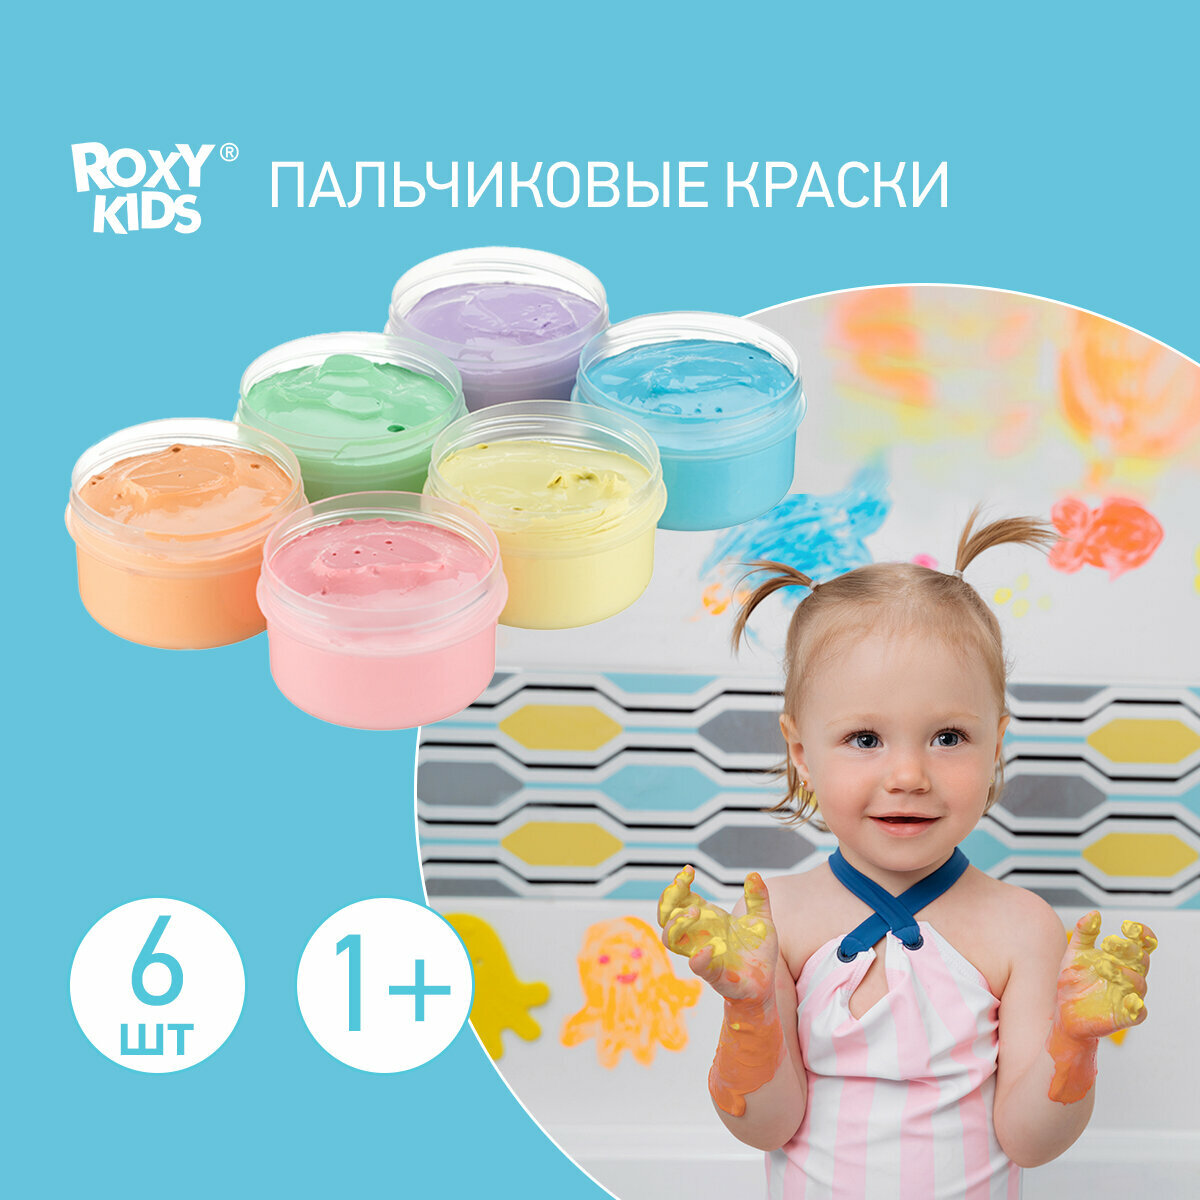 ROXY-KIDS Набор пальчиковых красок (RPF-001)